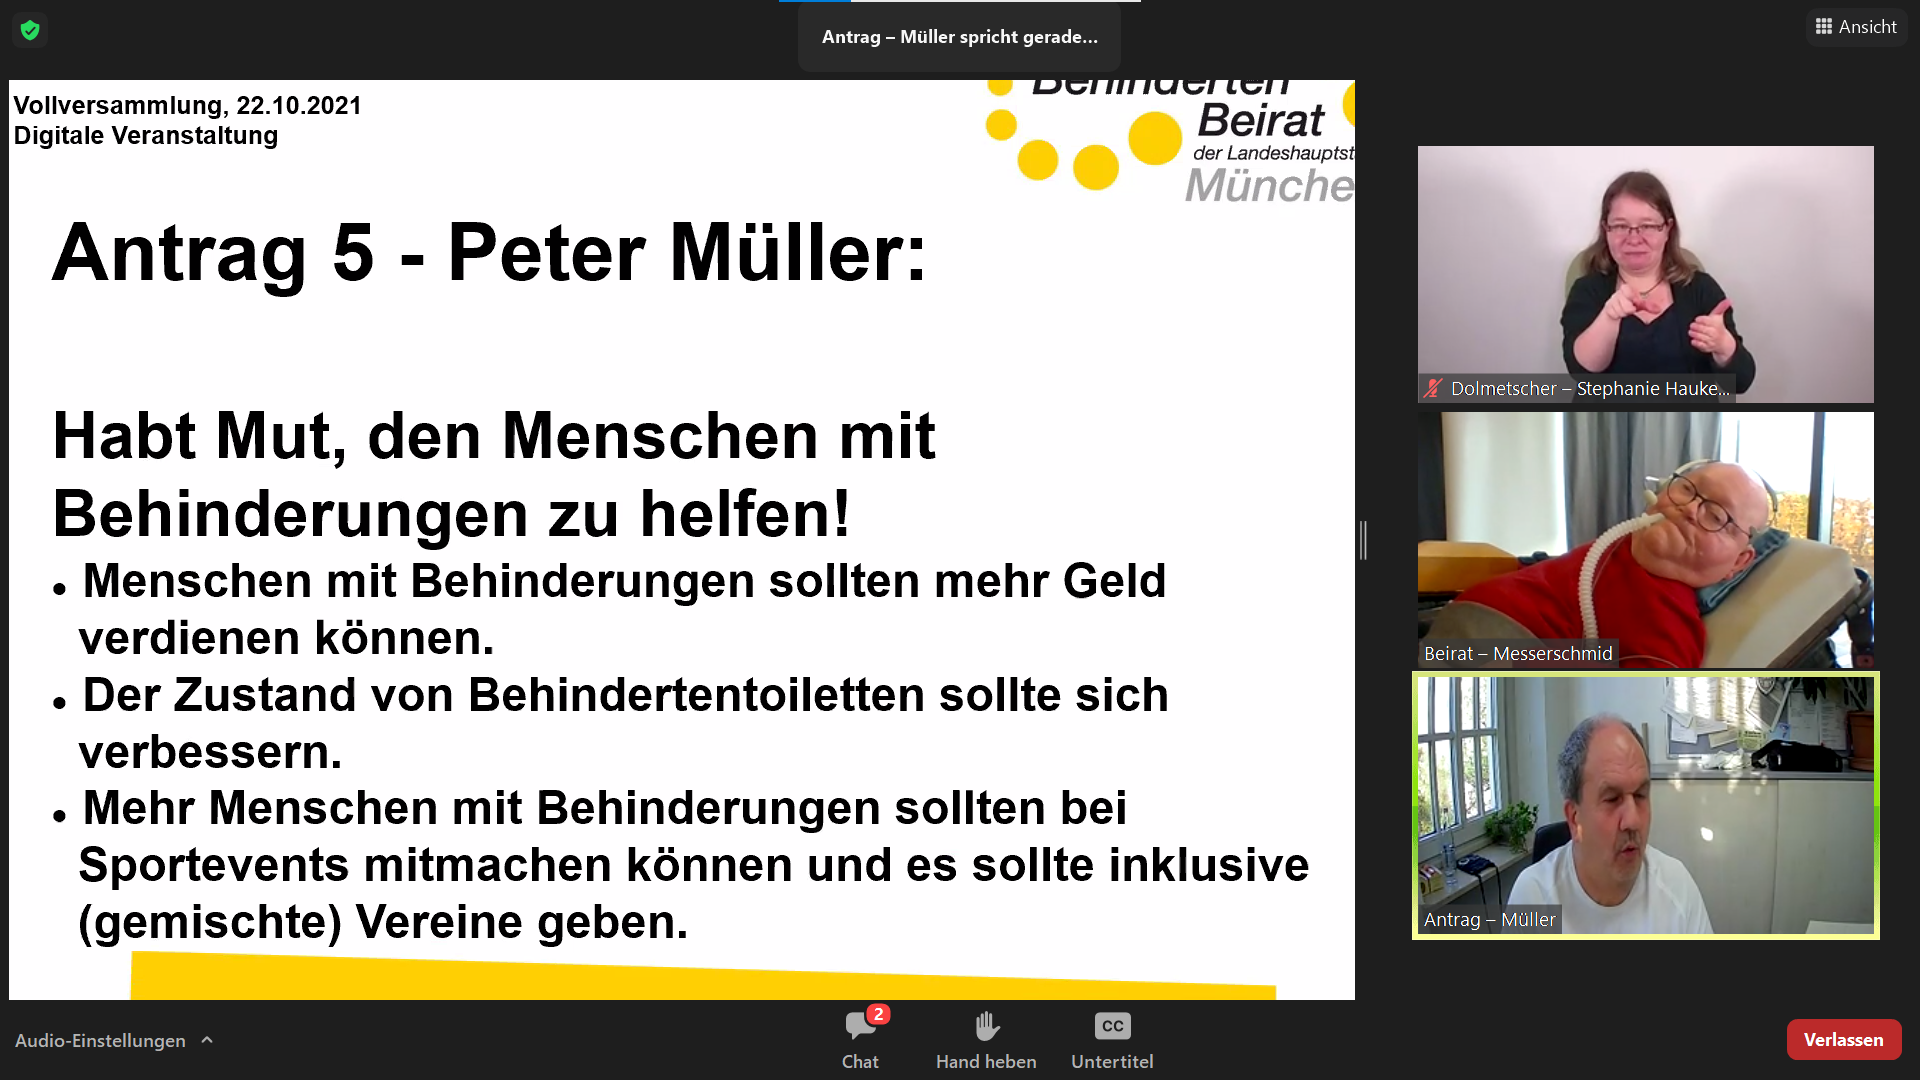 Antrag habt Mut, den Menschen mit Behinderungen zu helfen wird von Peter Müller vorgestellt